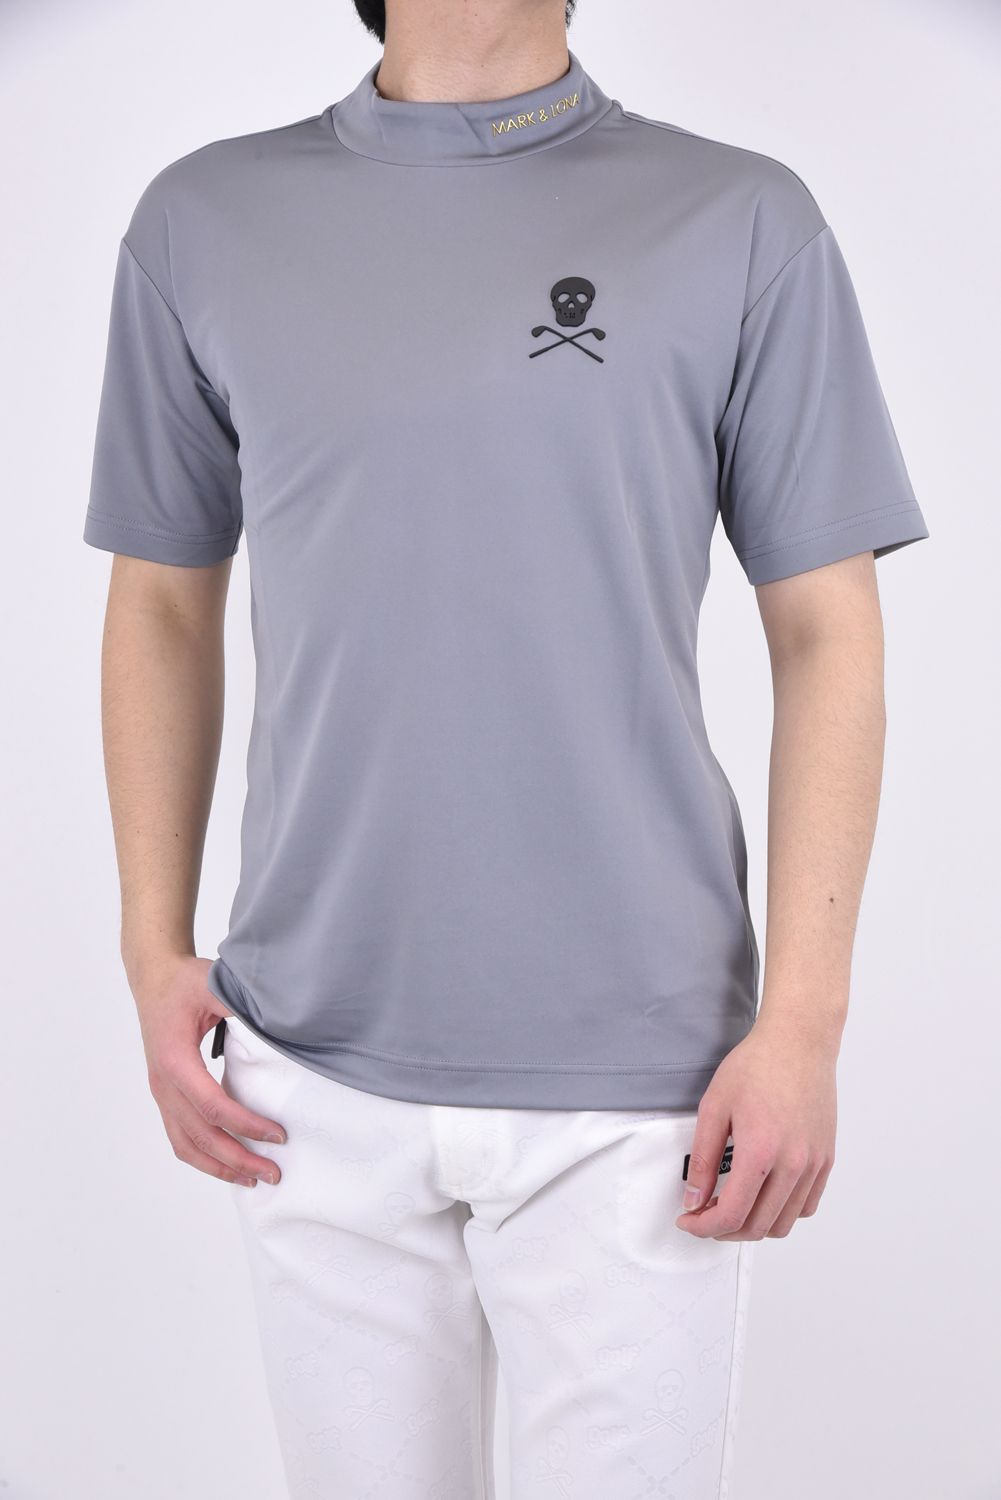 JADED MOCK NECK TOP / 3Dブランドロゴ アイアンスカル 半袖モックネックTシャツ グレー - 44(S)